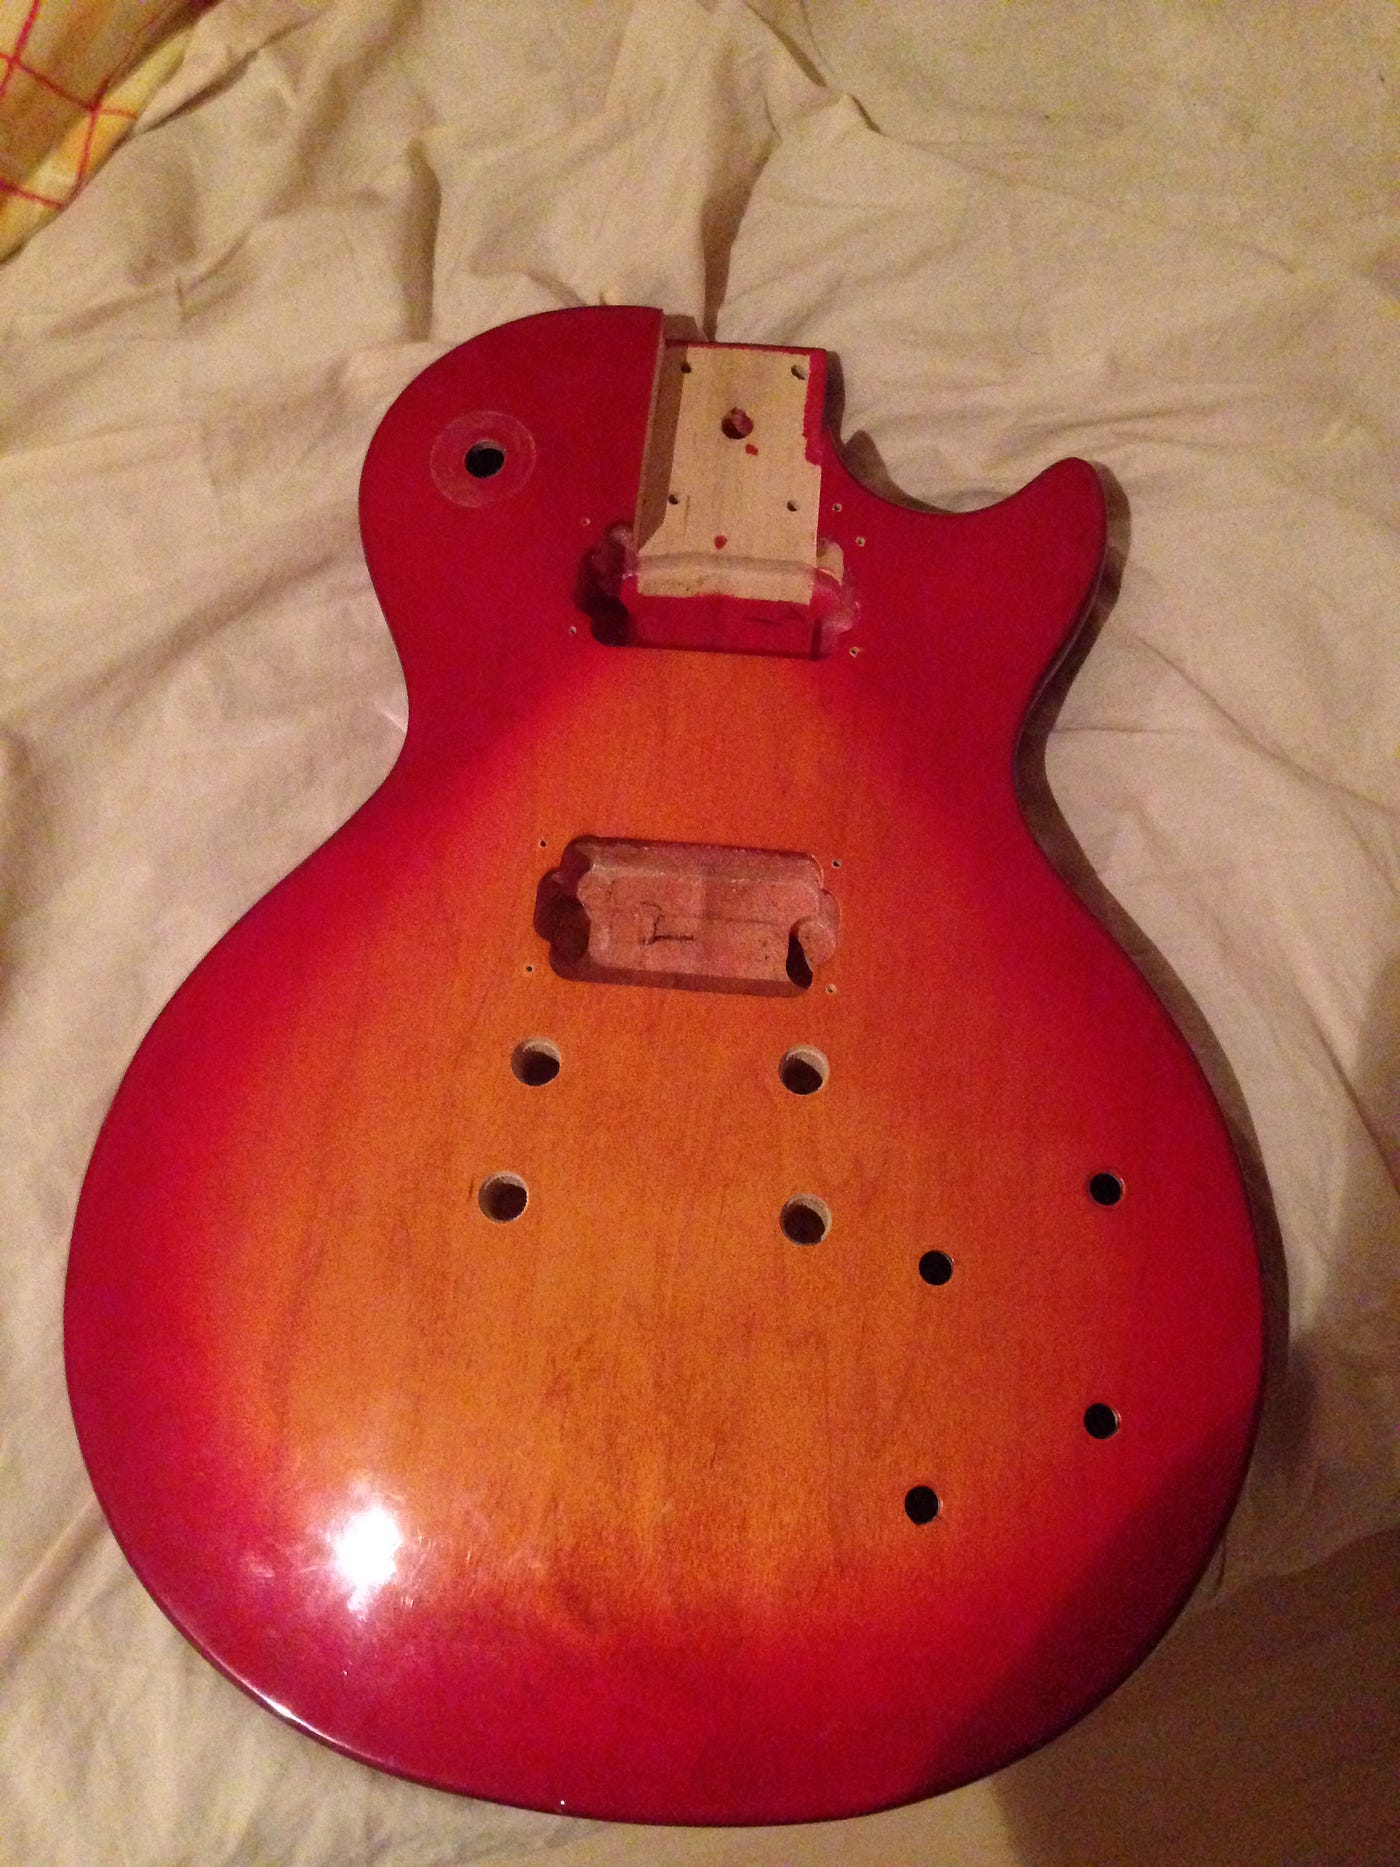 Epiphone uusiksi. Kuinka vanhasta kitarasta saadaan… | by Pasi Valkeila |  Kitara ja minä | Medium